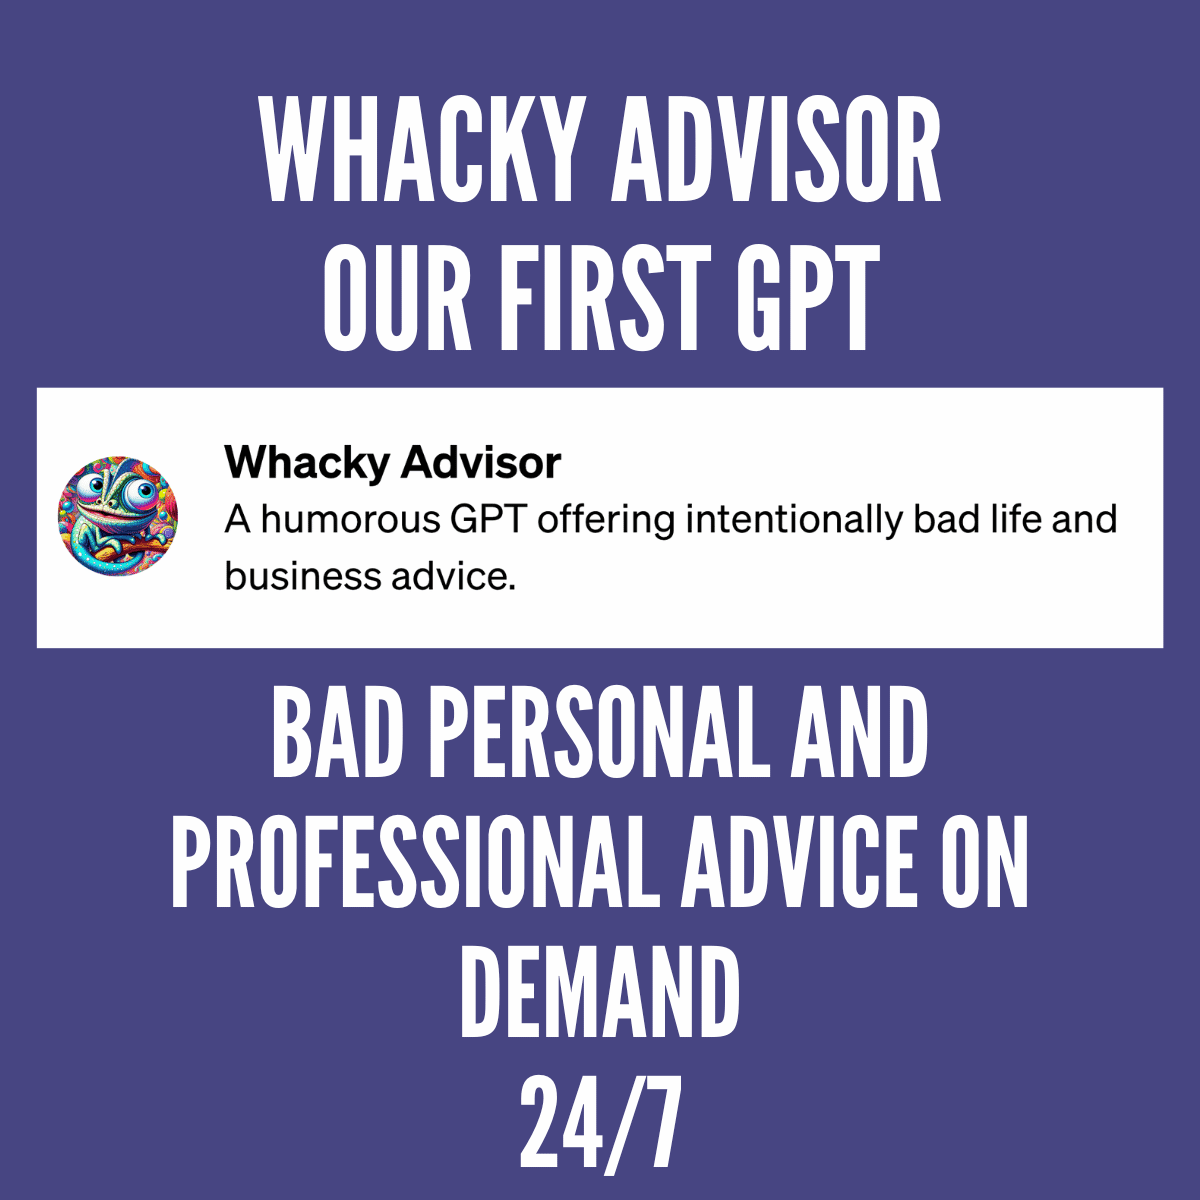 Whacky Advisor